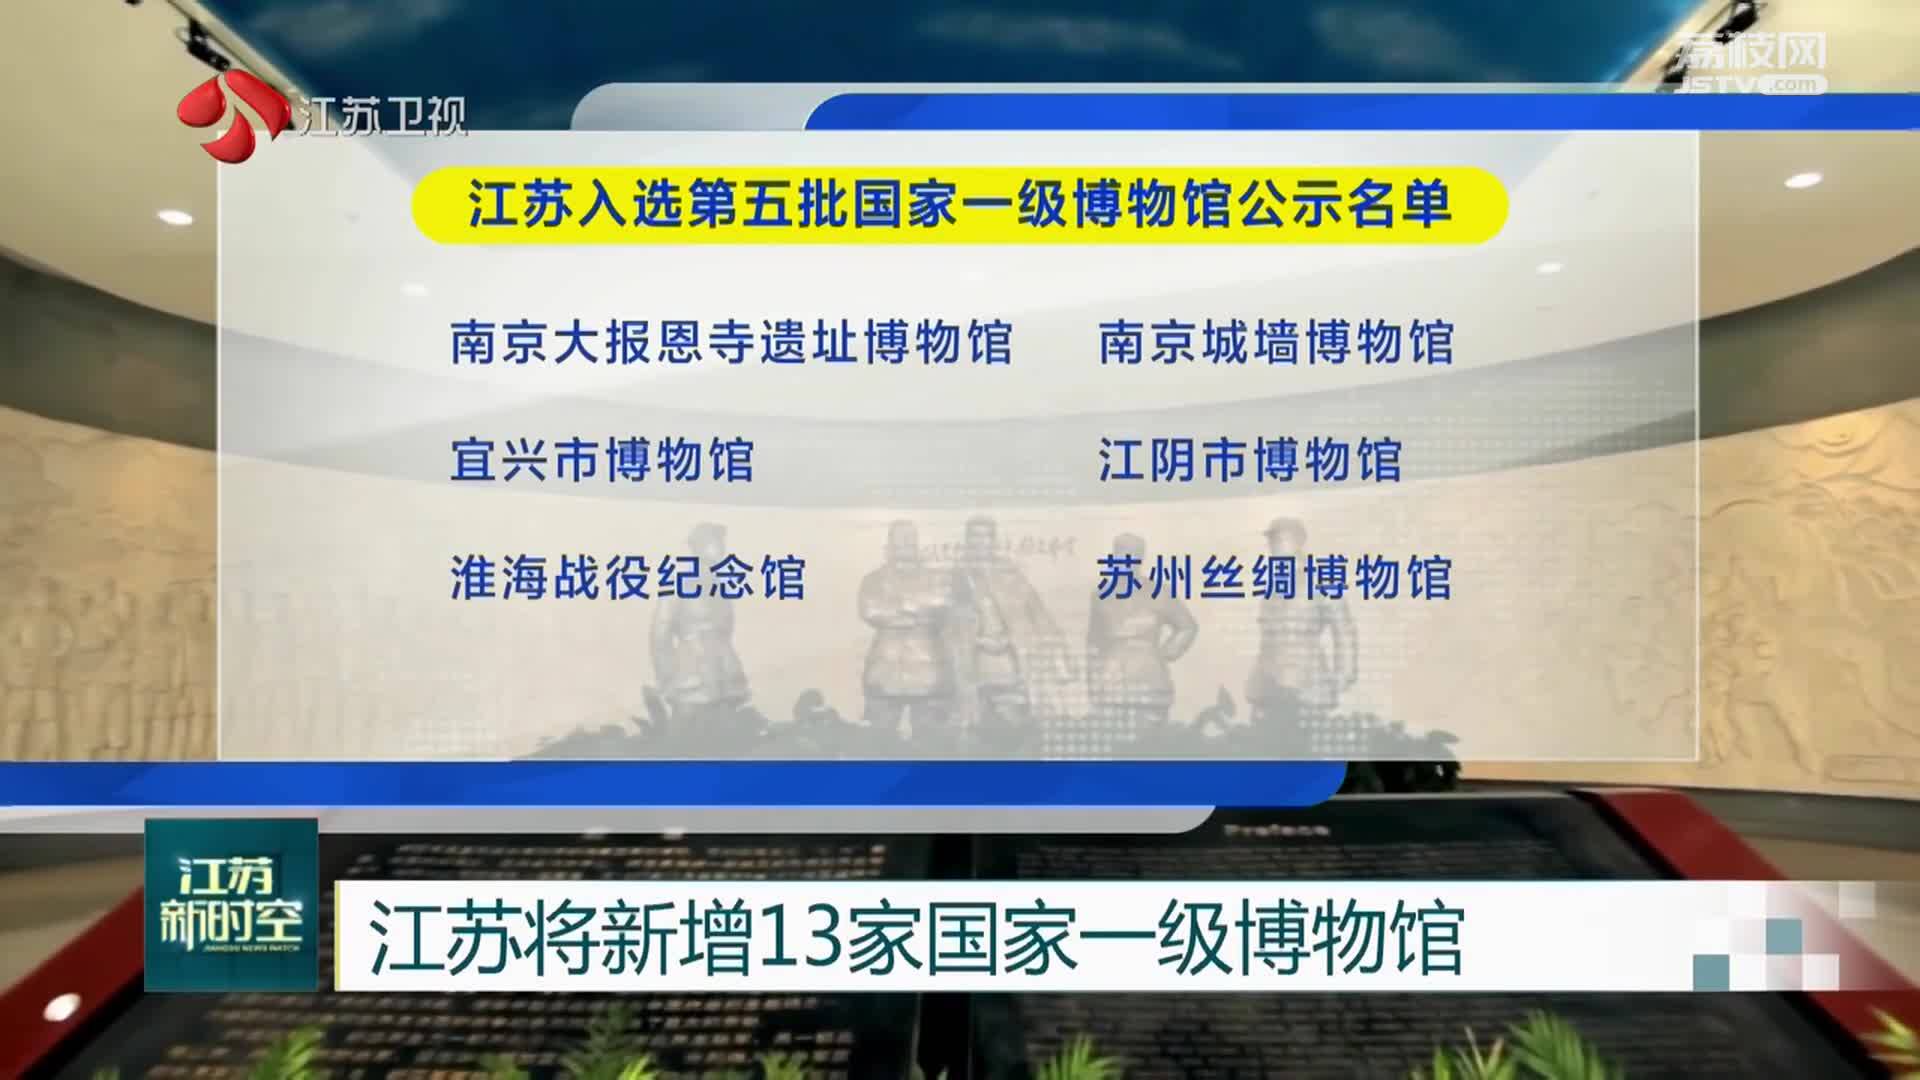 江苏将新增13家国家一级博物馆